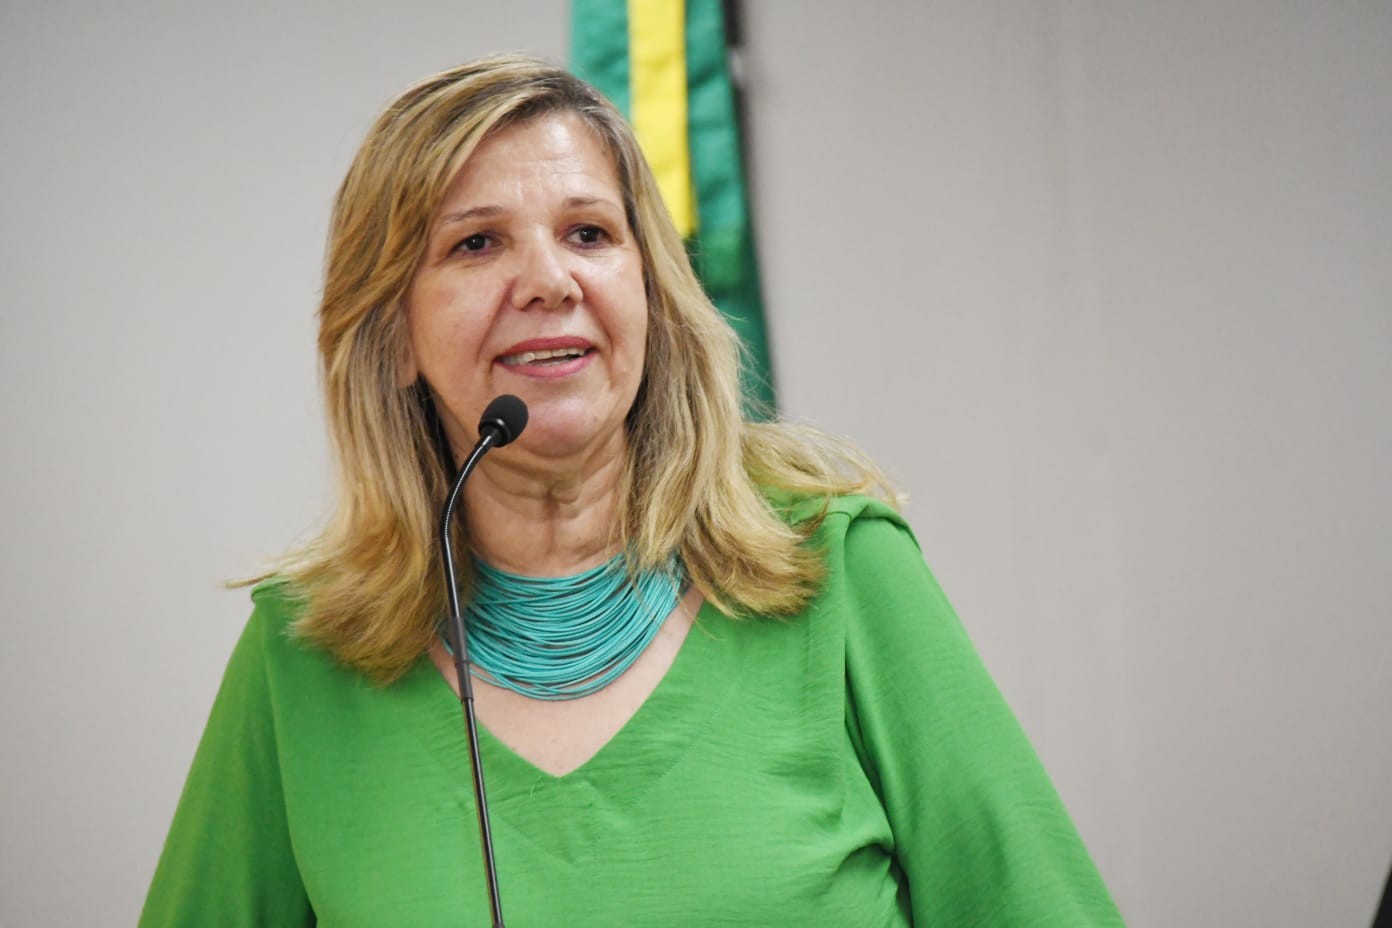 Câmara Municipal arquiva denúncia contra vereadora Miriam Brandão sobre suposta entrega de congratulações sem aprovação